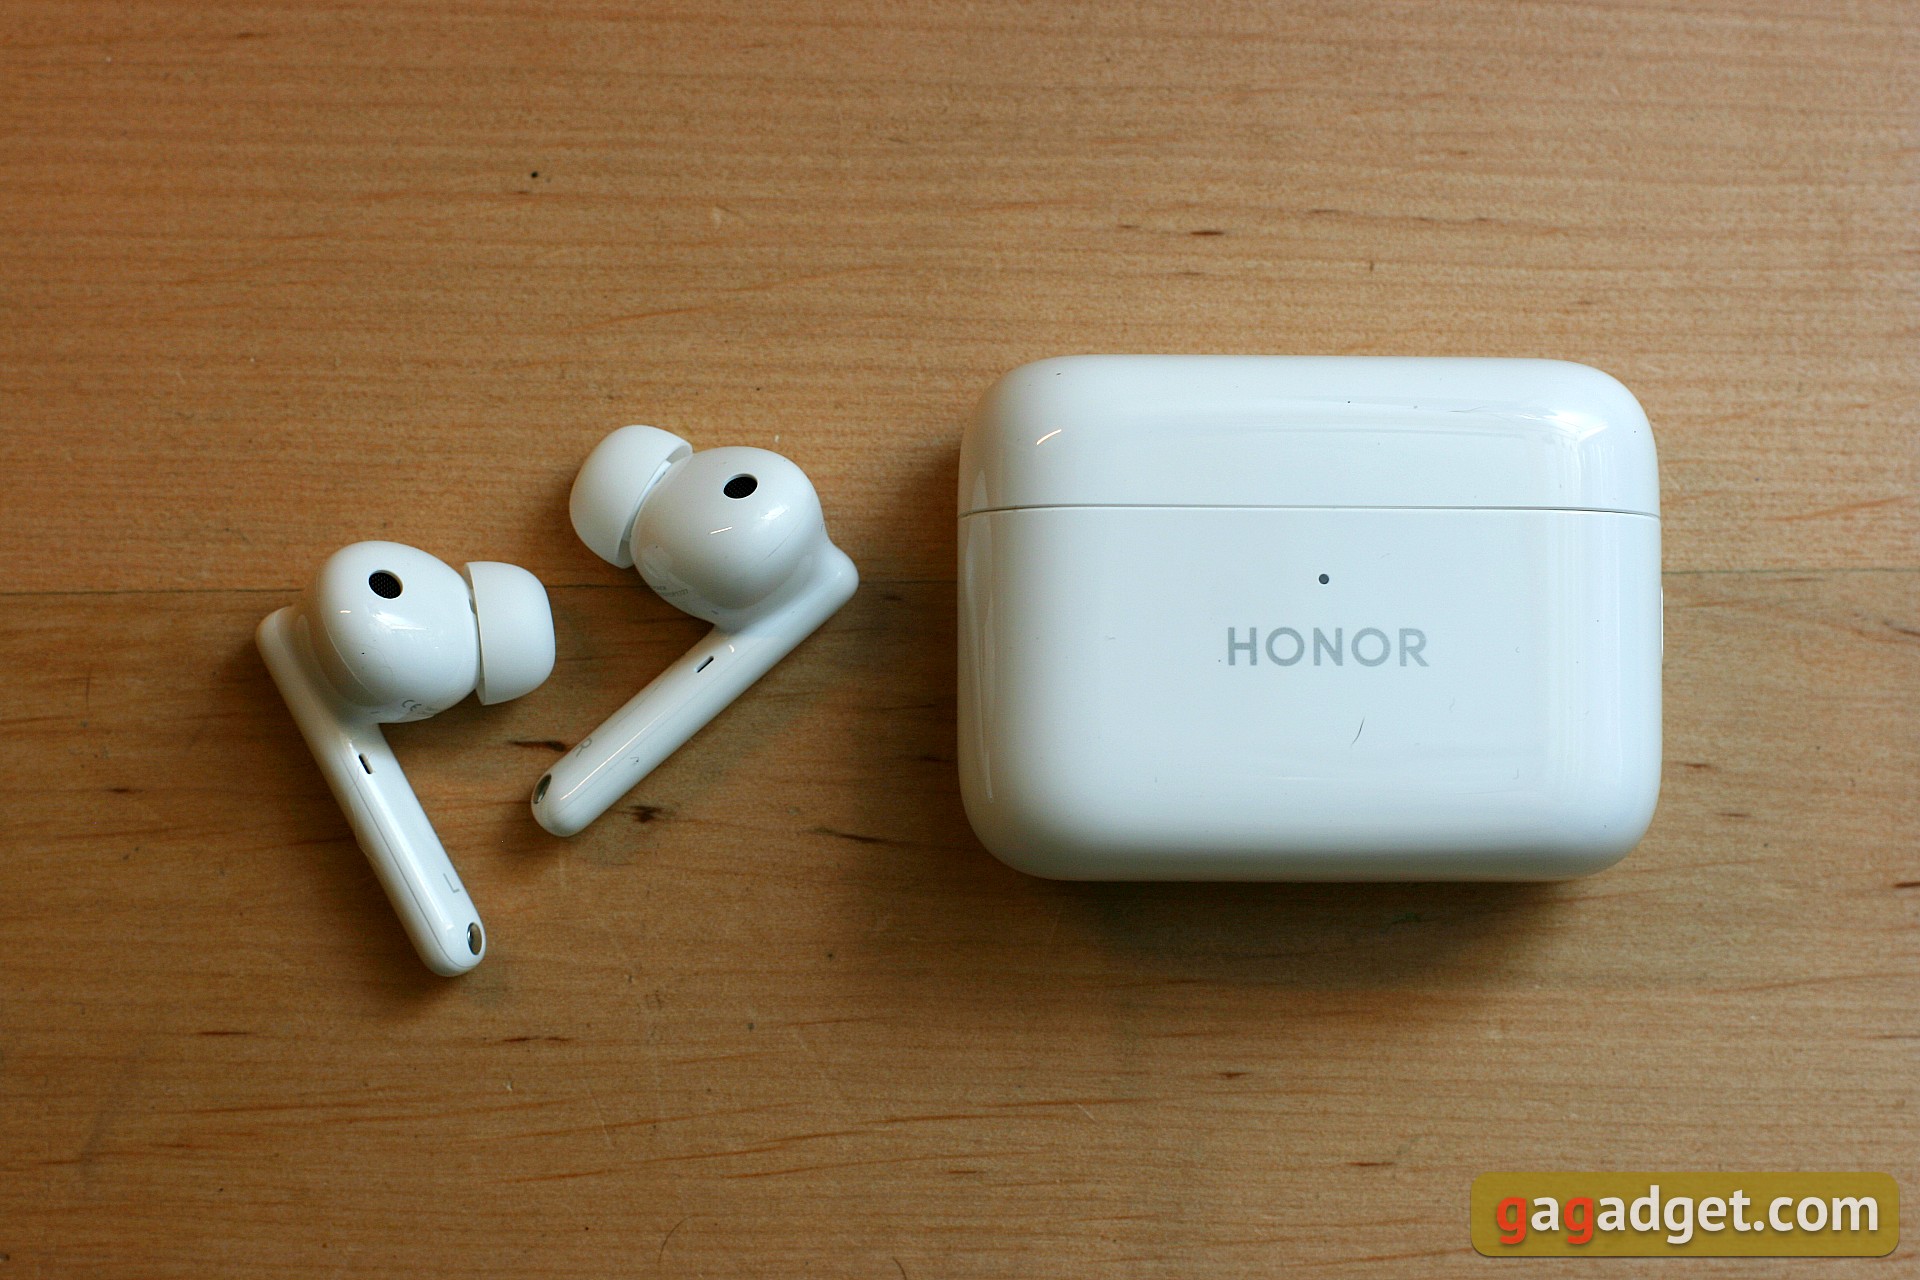 Test der Honor Earbuds 2 Lite TWS-Kopfhörer: Geräuschunterdrückung zum richtigen Preis